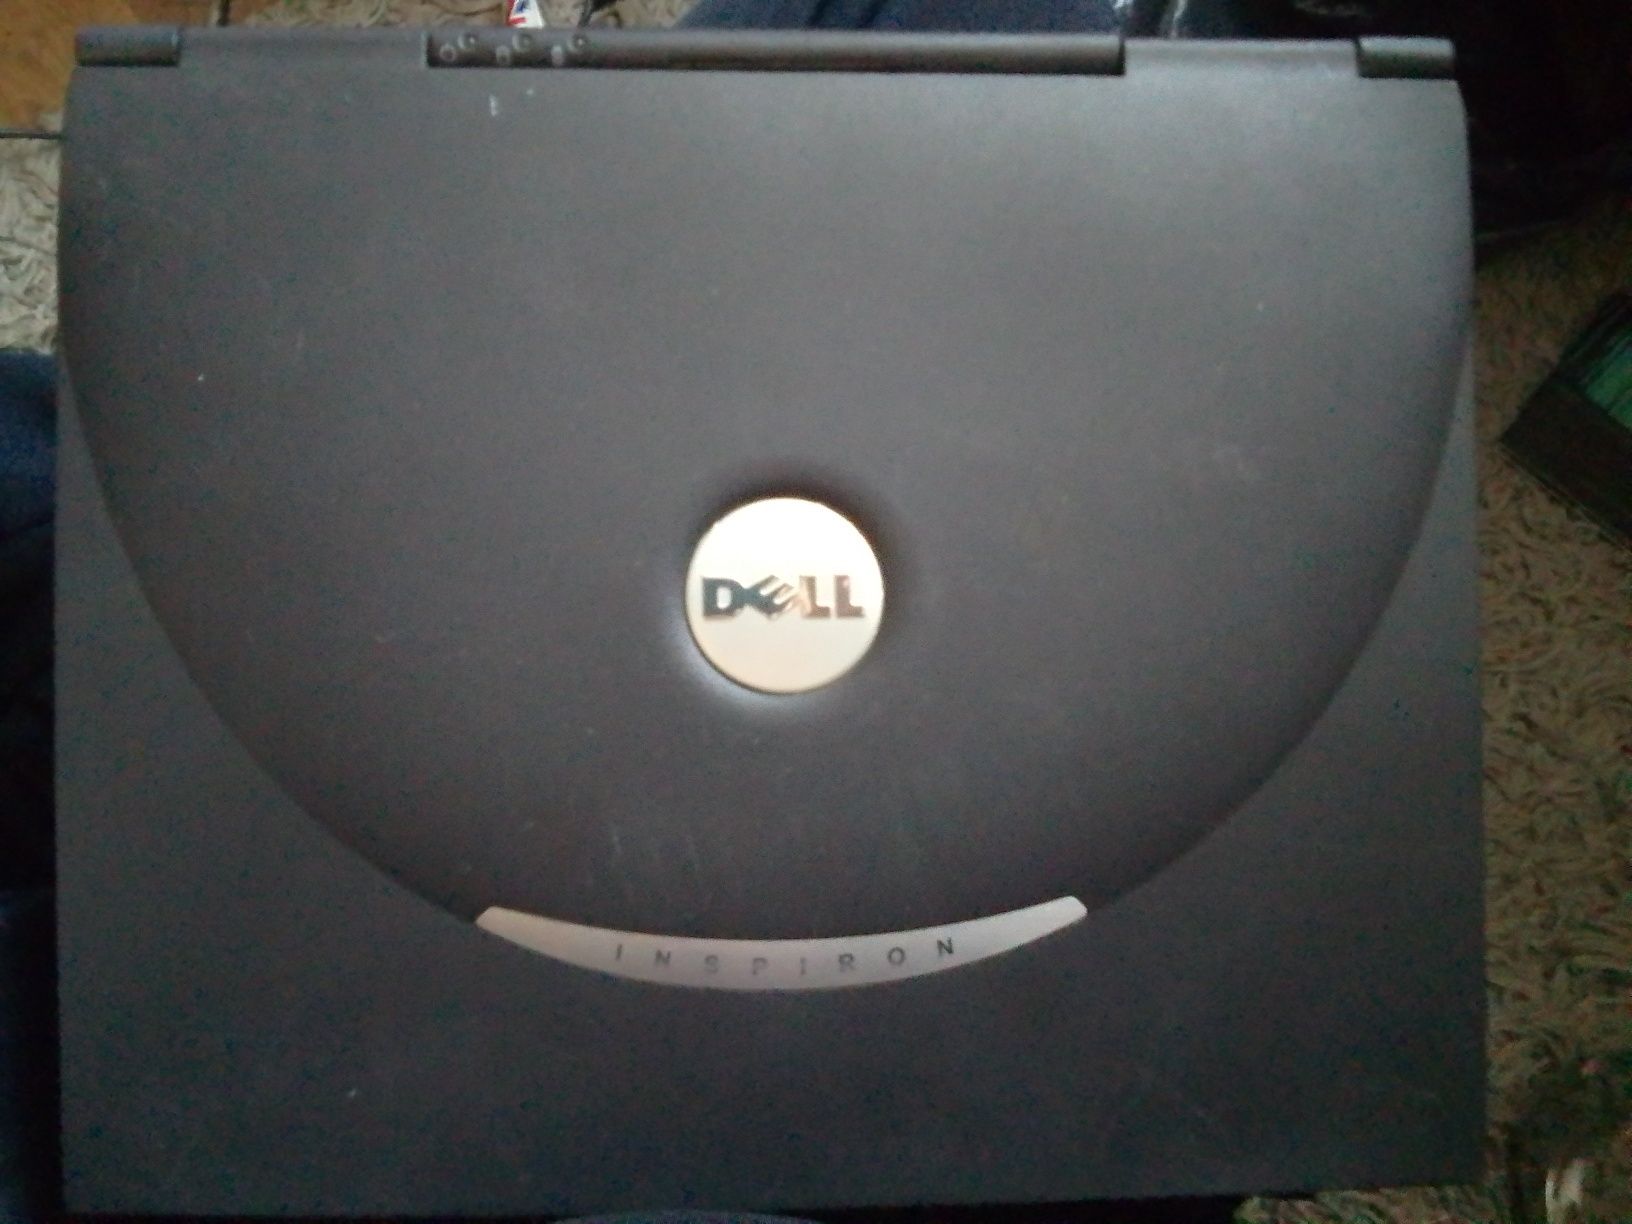 Retro laptop Dell Inspiron i8000